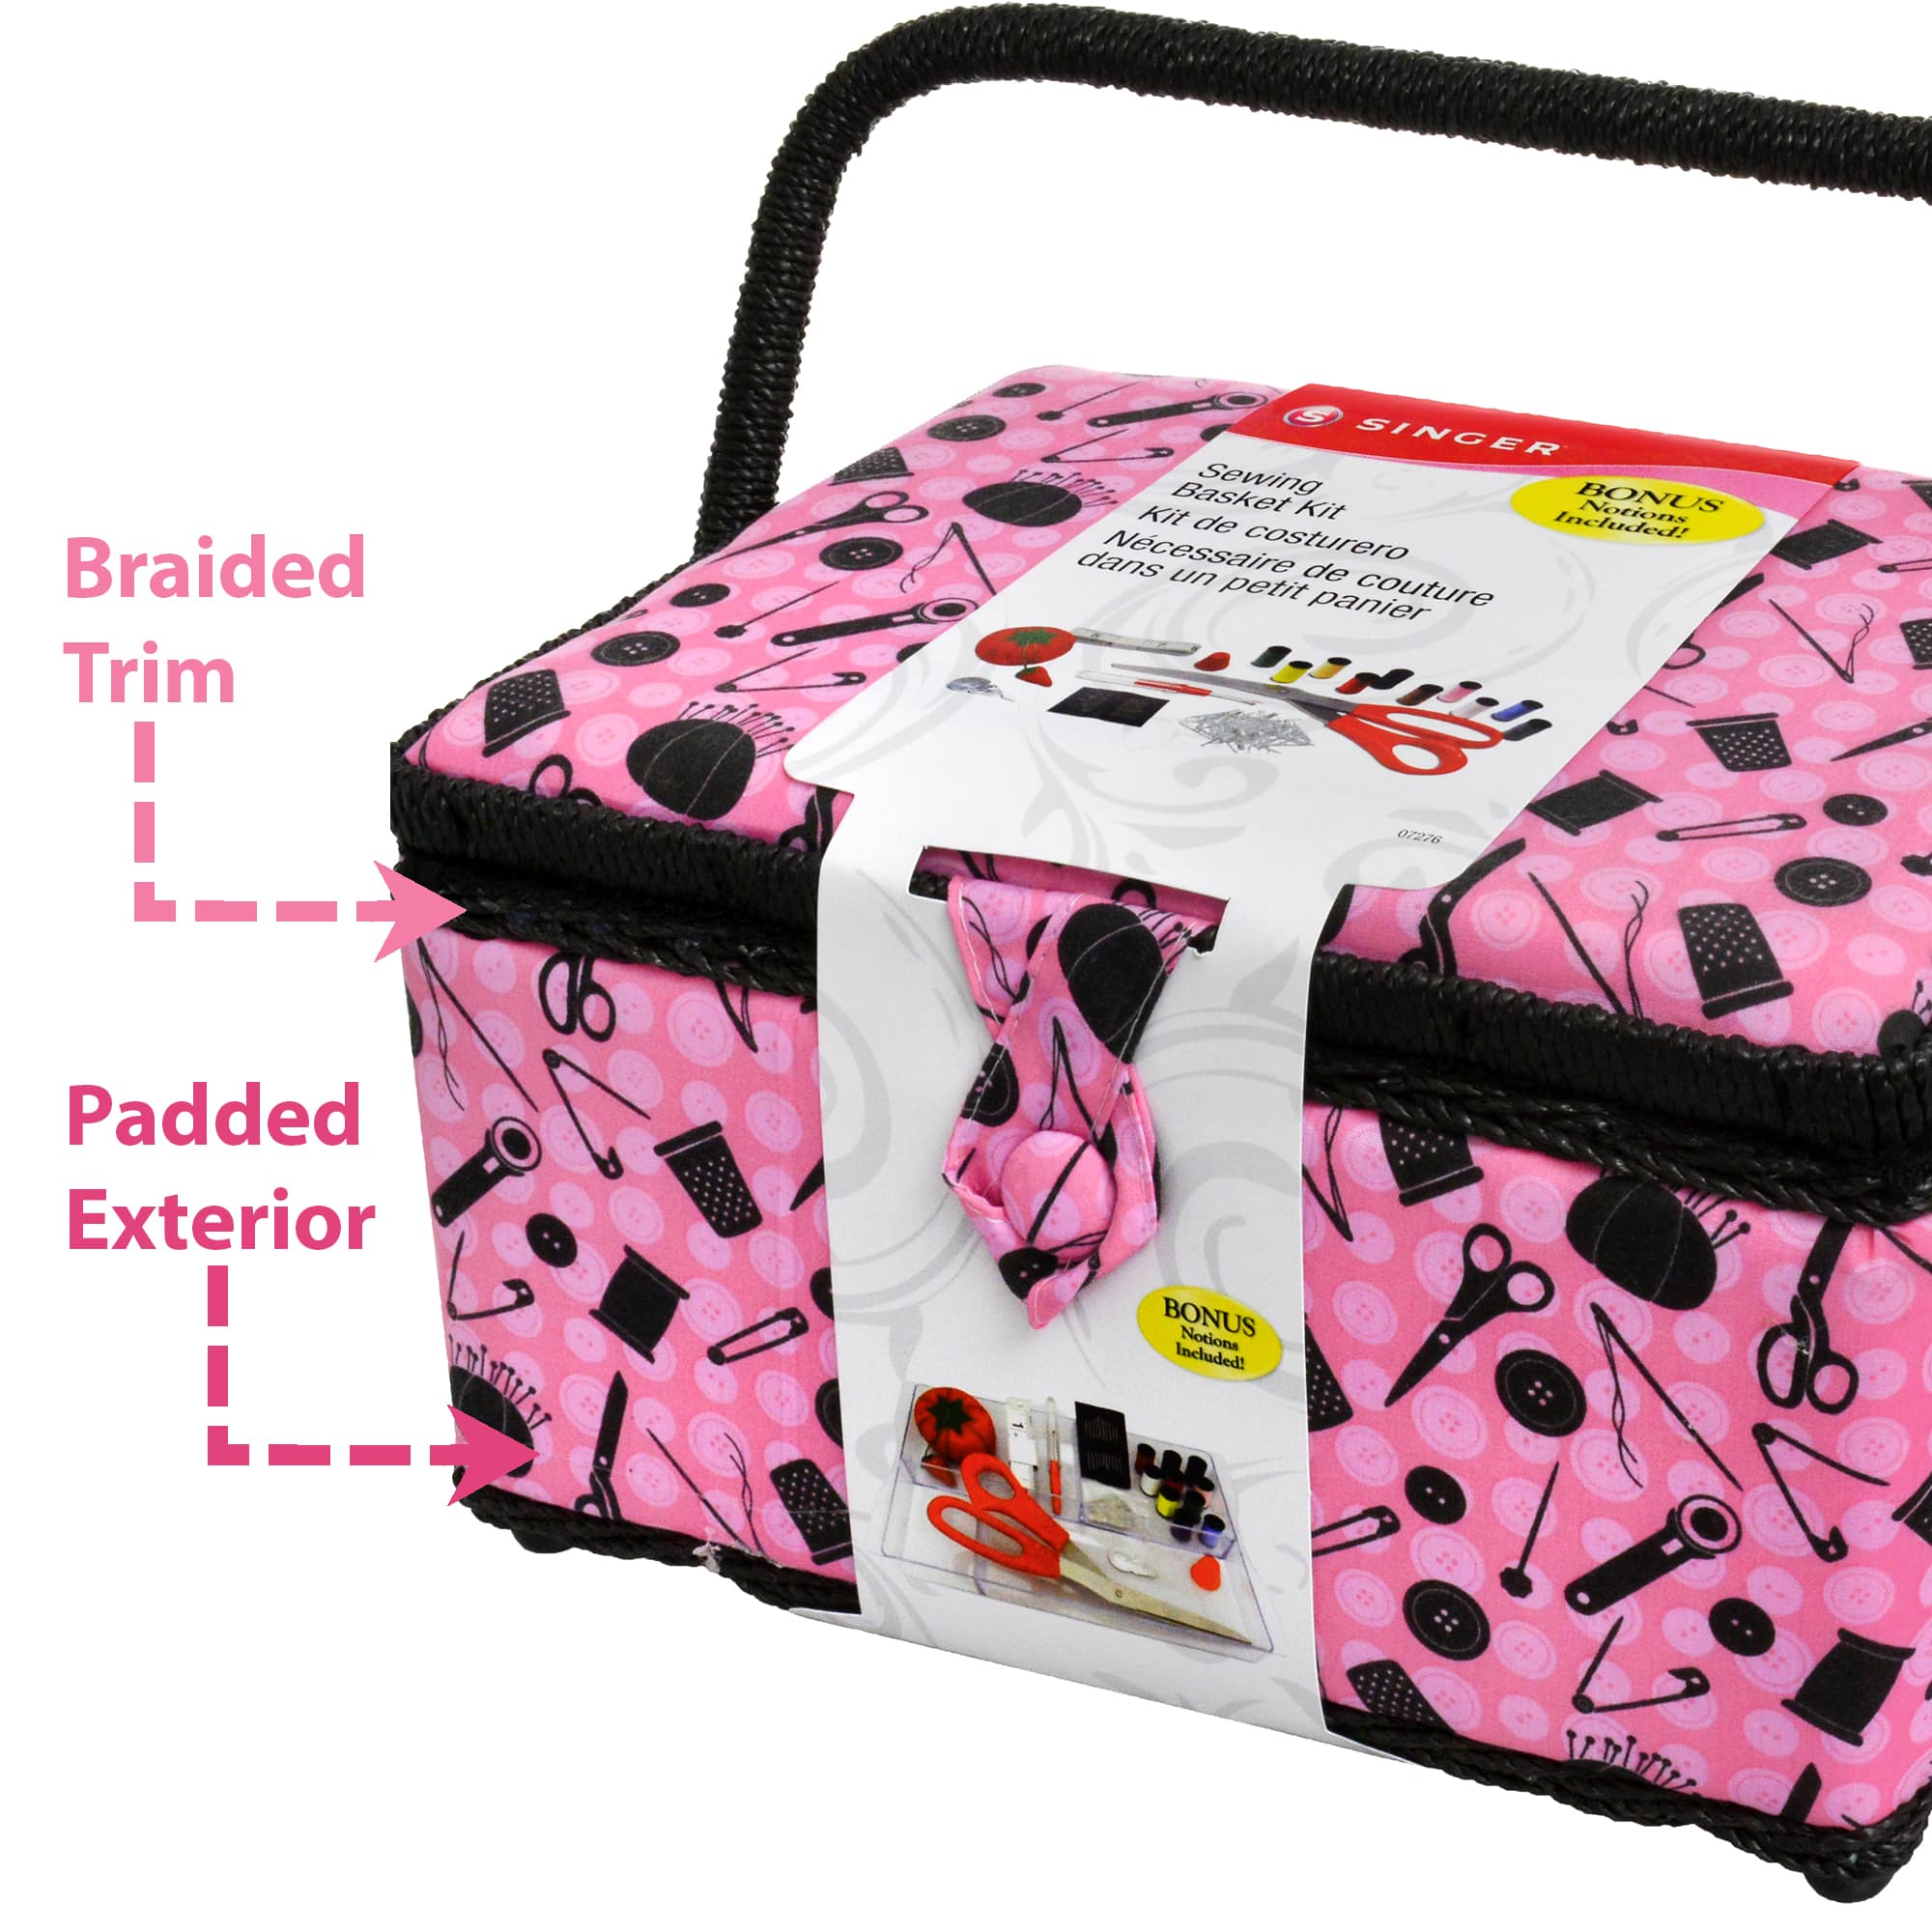 SINGER Large Sewing Basket Kit 126pcs-Pink And Black Notions